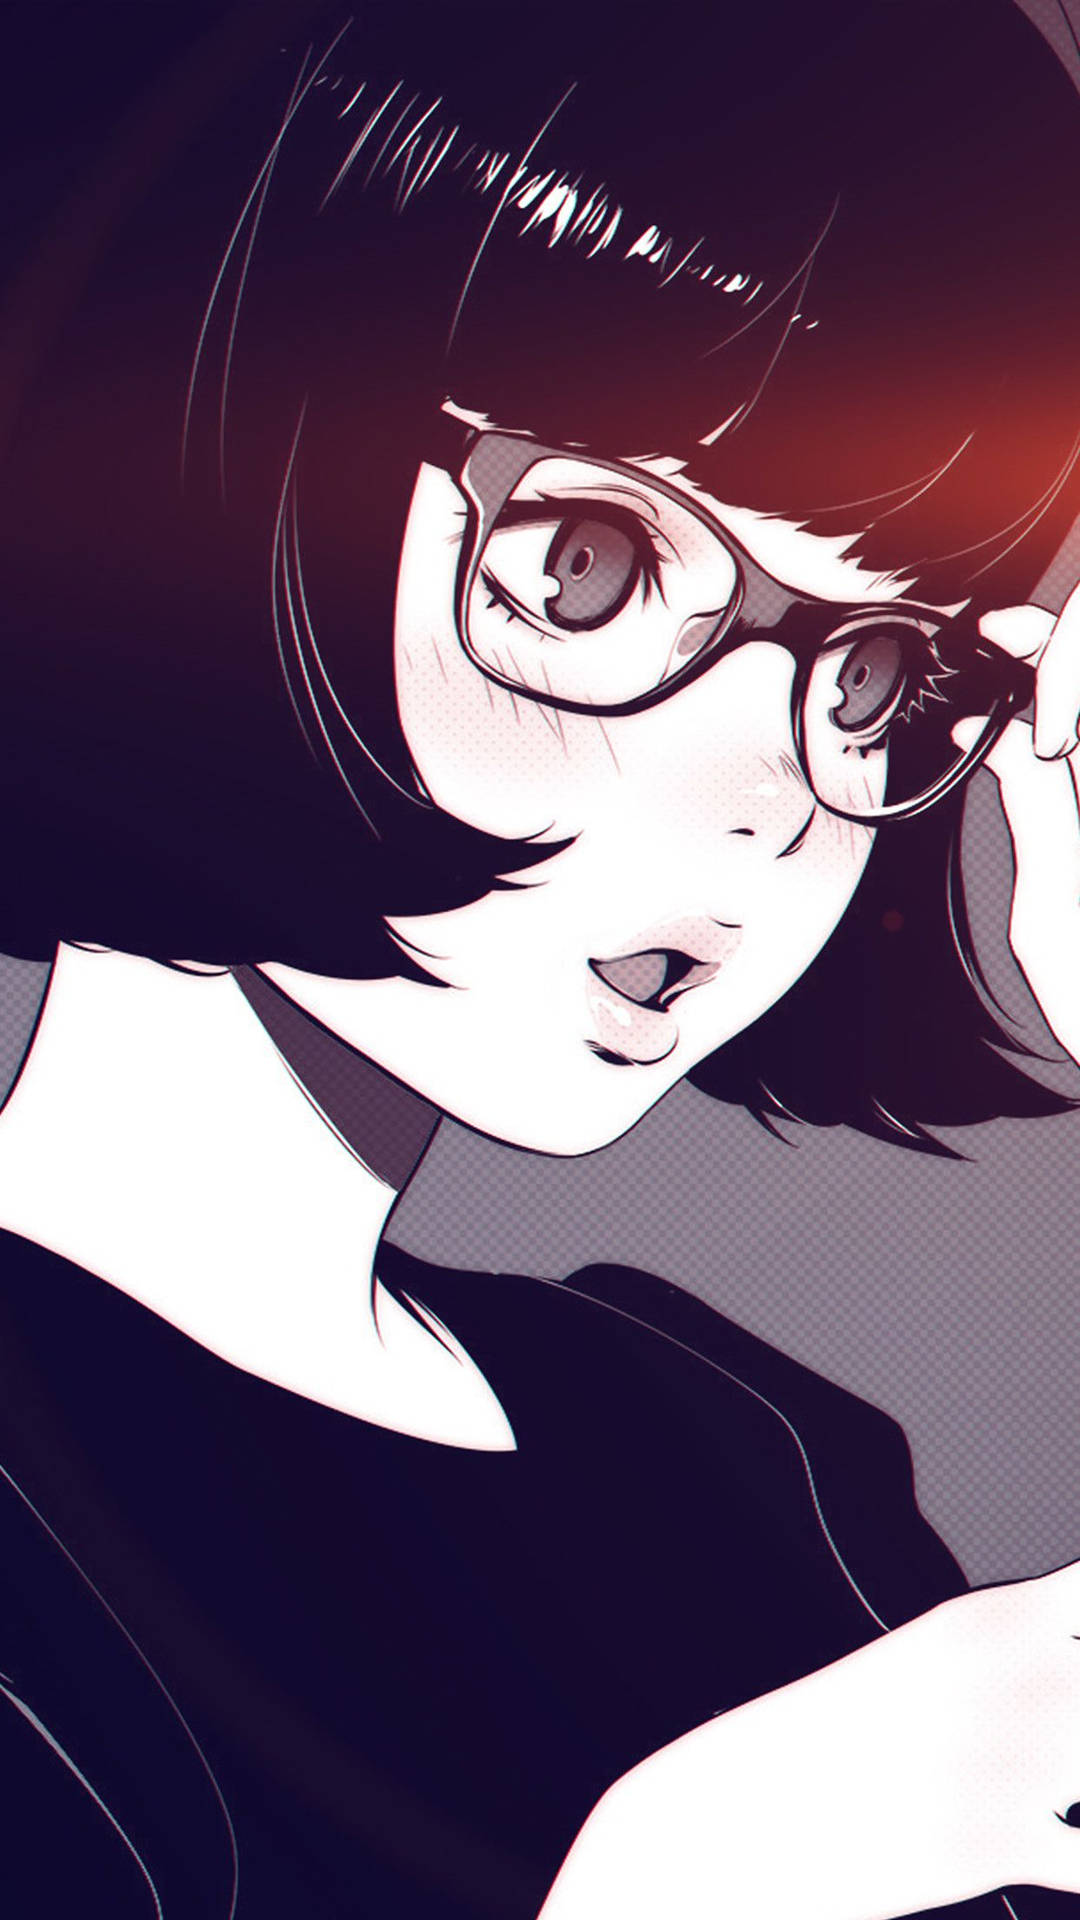 Dark Anime Aesthetic Girl With Glasses Wallpaper